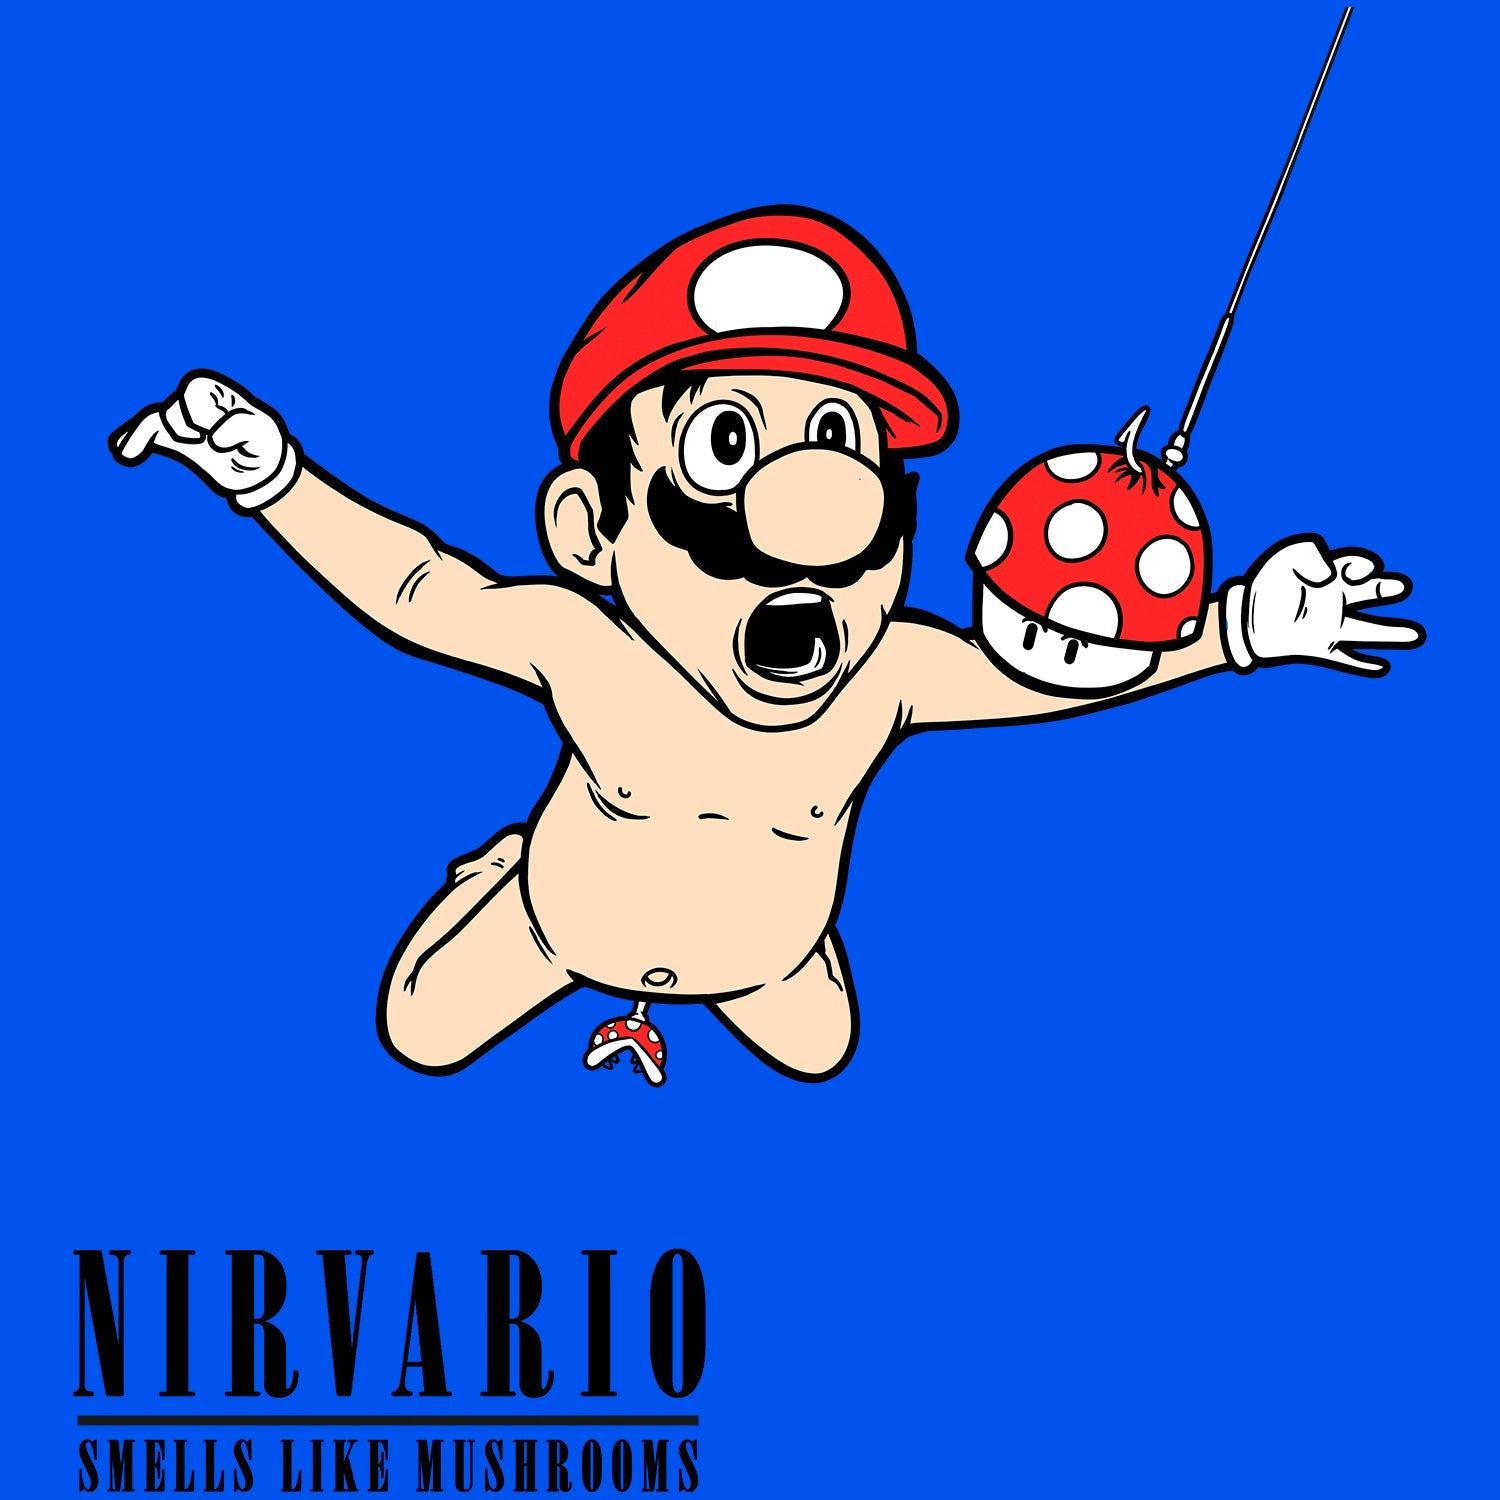 Nirvario Kids T Shirt